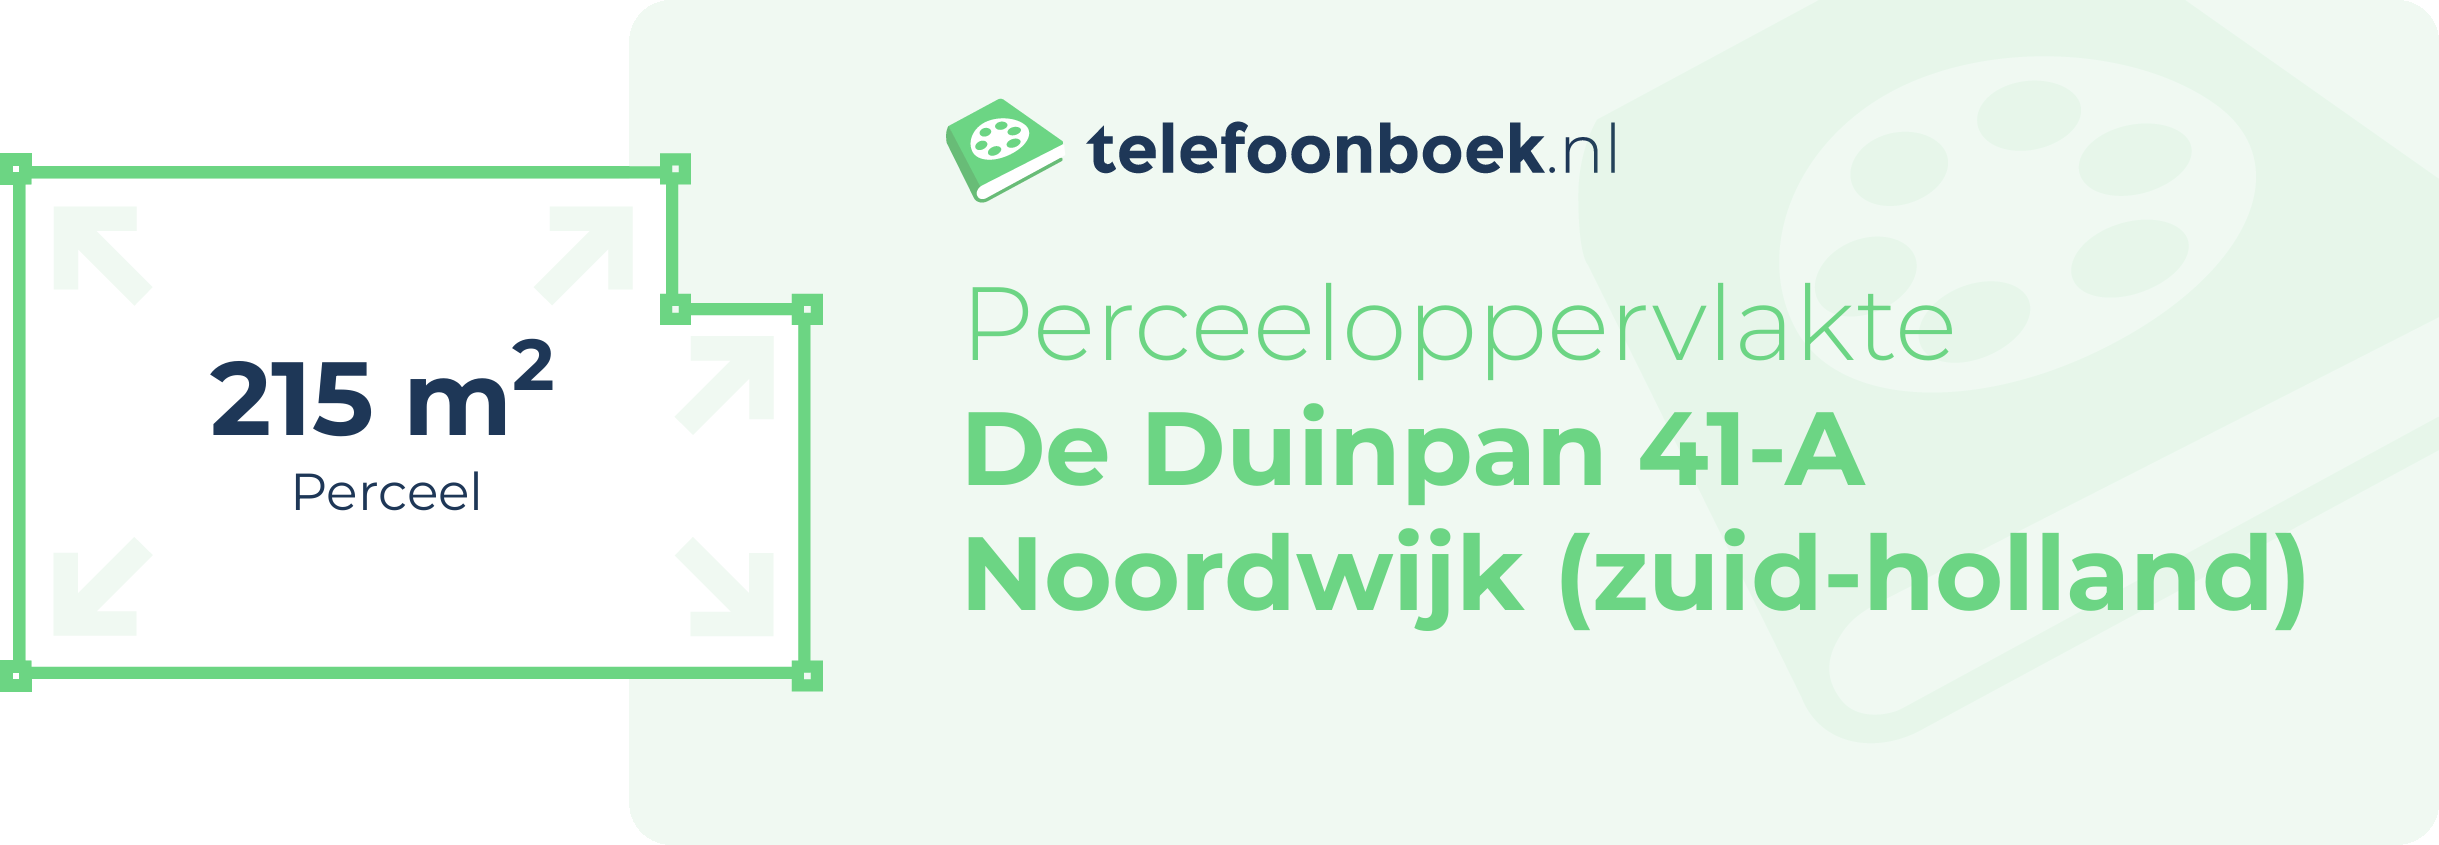 Perceeloppervlakte De Duinpan 41-A Noordwijk (Zuid-Holland)